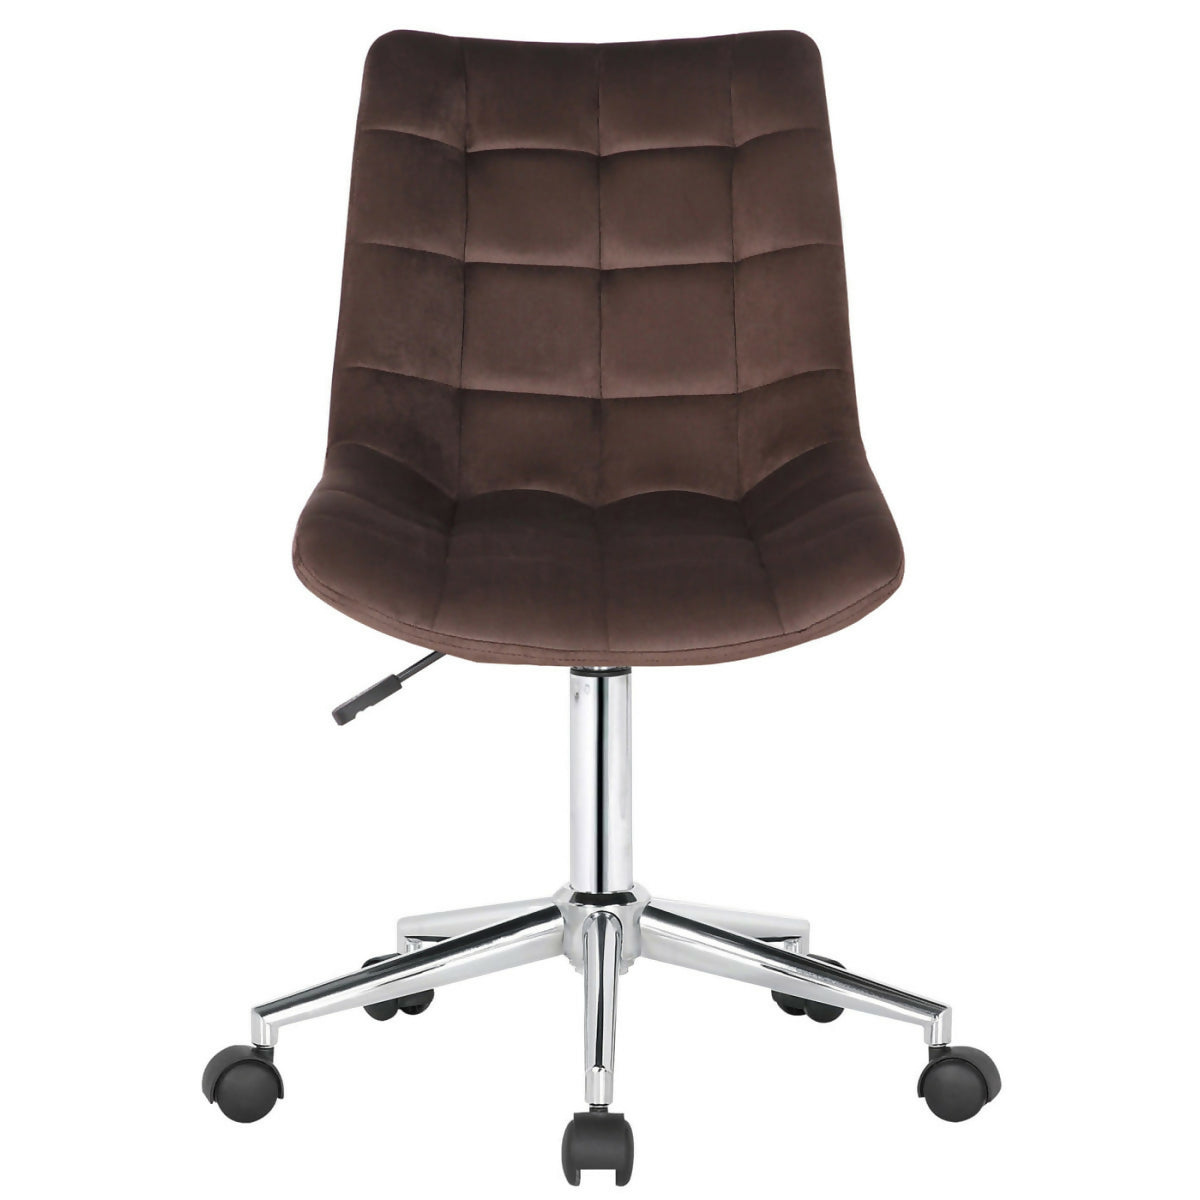 Medford office chair - Brown velvet - 0